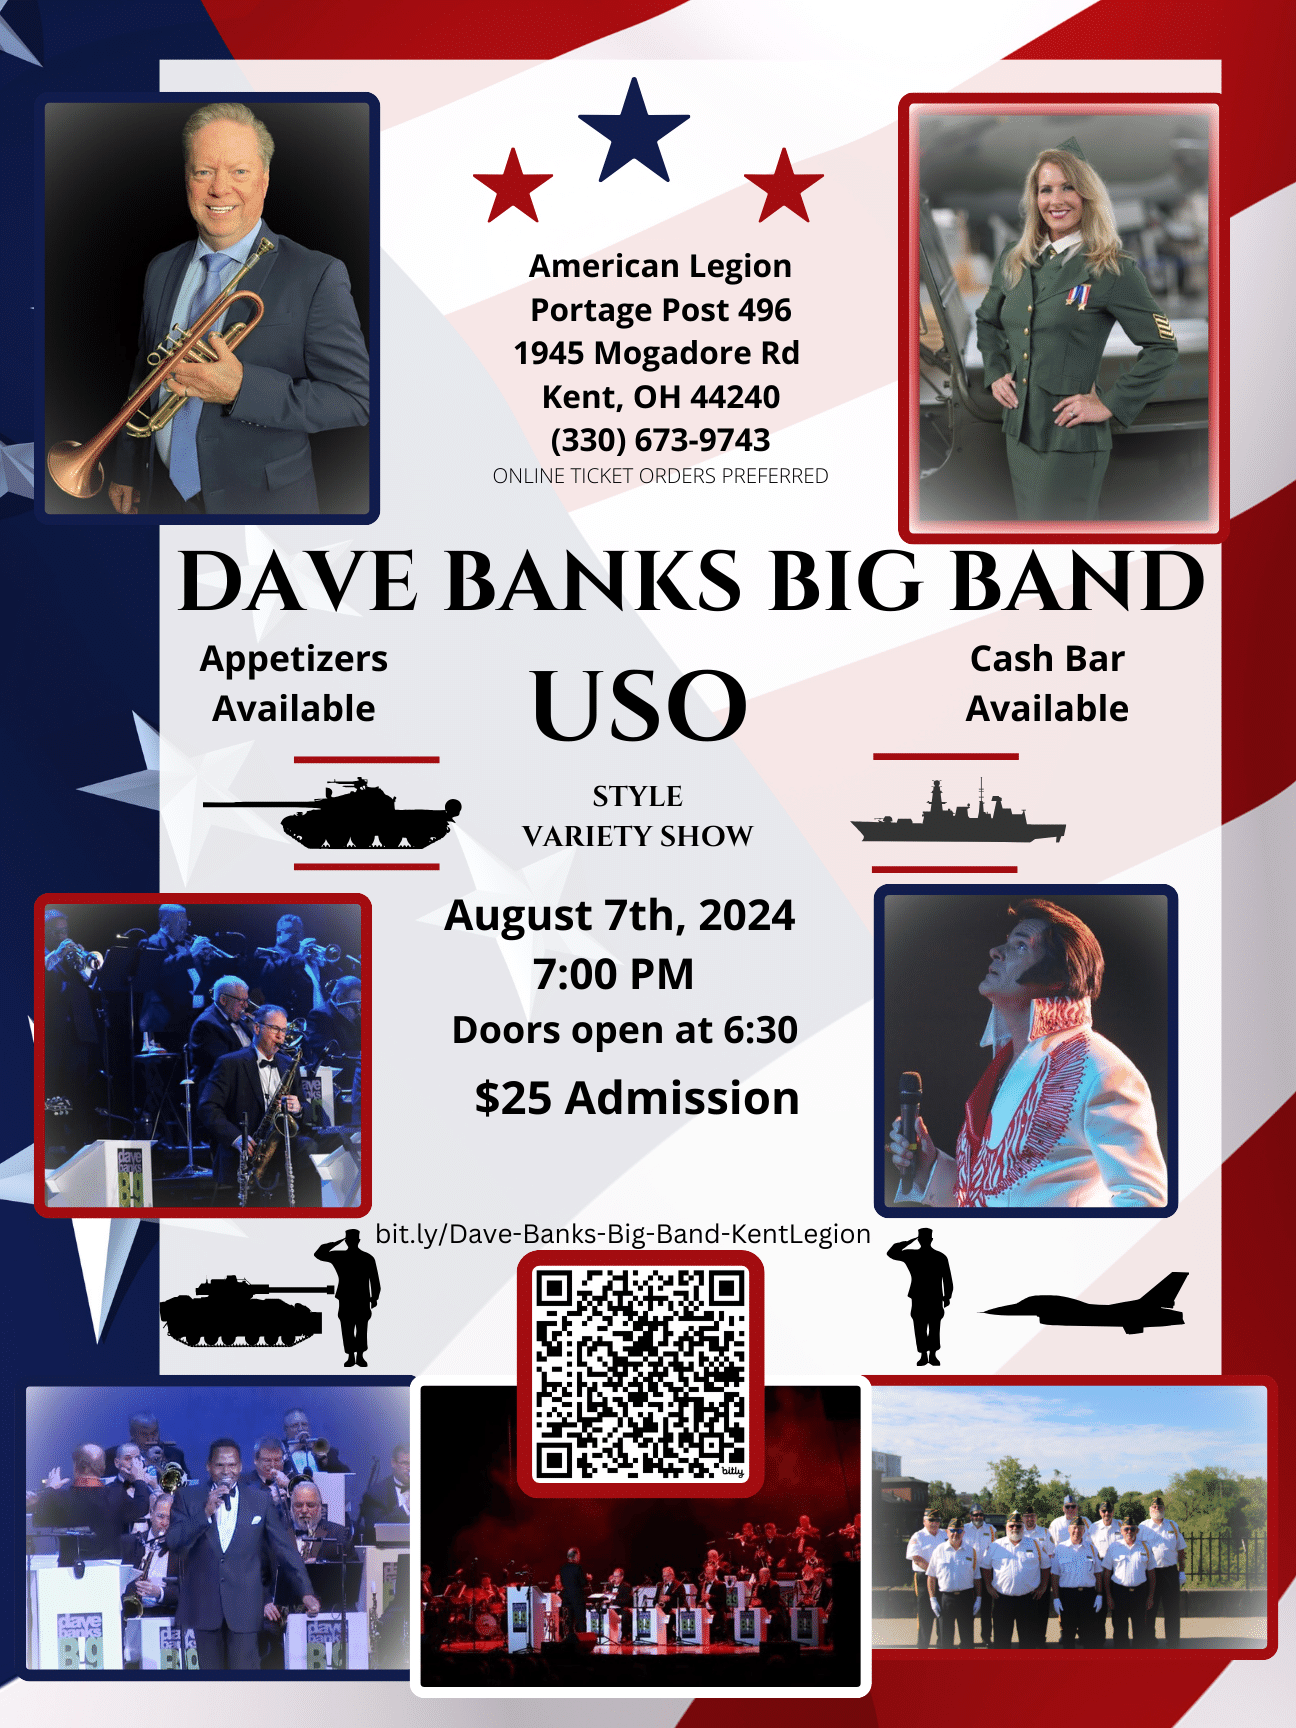 Dave Banks Big Band Show (USO Tour Style) American Legion, Kent on may. 25, 19:00@Portage Post Kent American Legion - Compra entradas y obtén información en American Legion Kent, and Krack Ups  